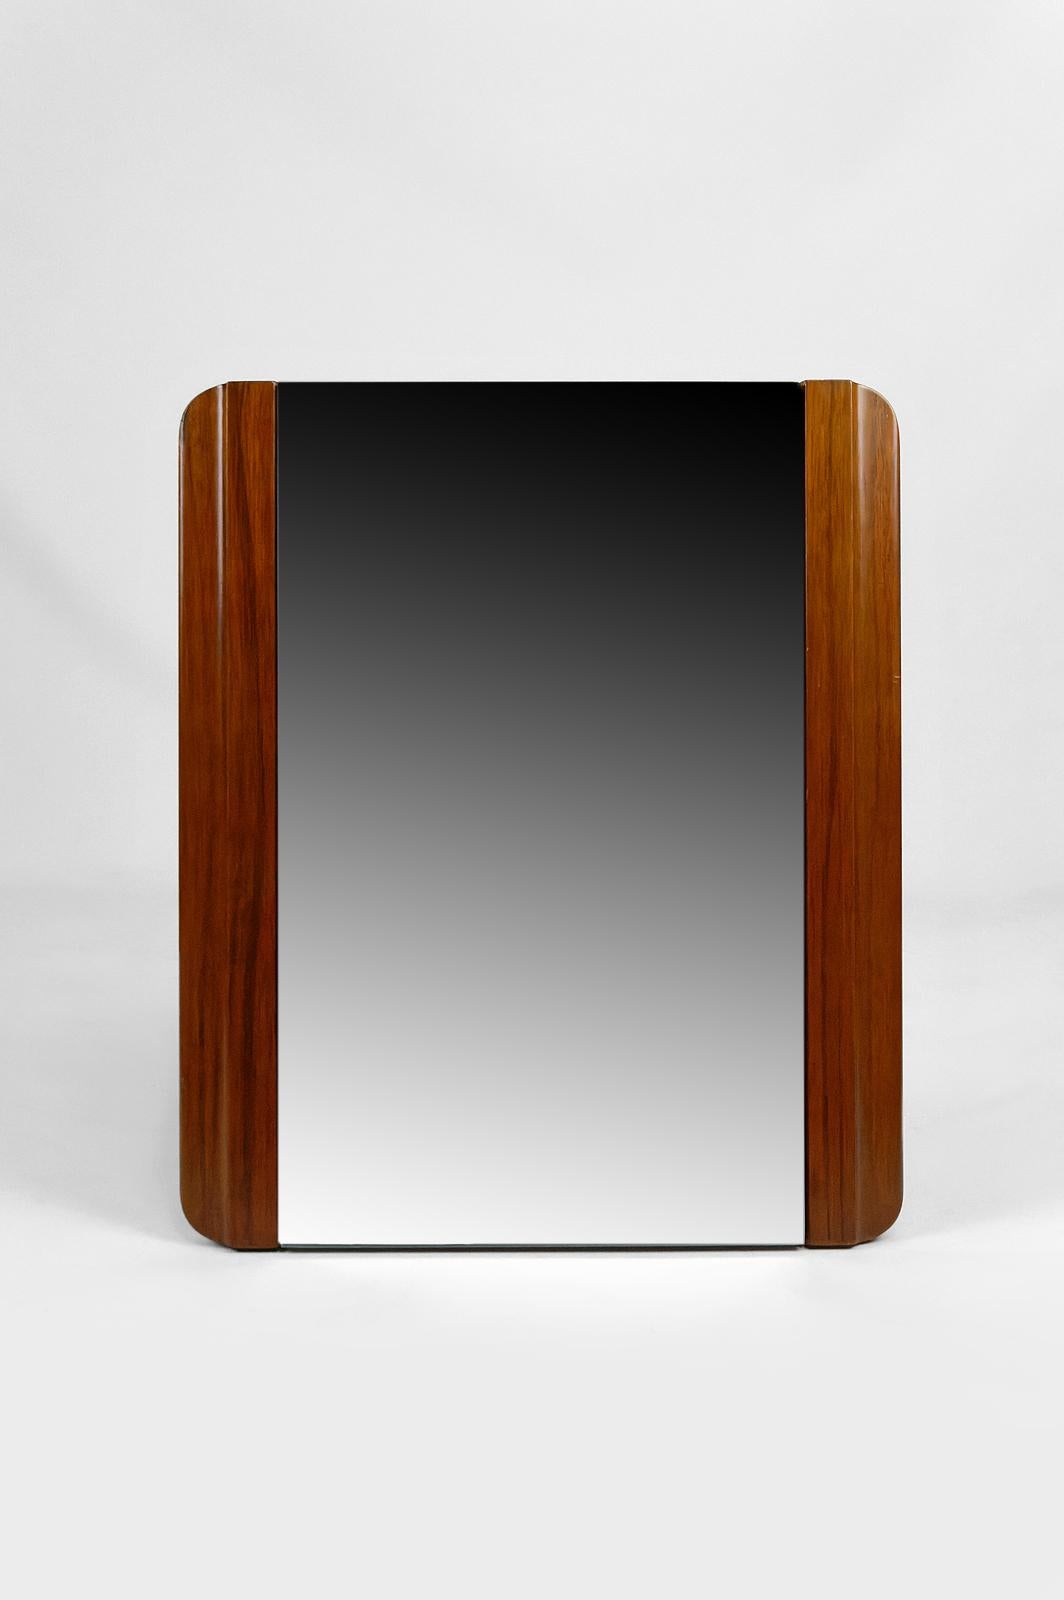 Eleganter Tisch-/Standspiegel aus Mahagoniholz.

Modernistisches Art Déco, Frankreich, ca. 1925-1930.

In sehr gutem Zustand.

Abmessungen insgesamt:
Höhe 54 cm
Breite 47 cm
Tiefe 15 cm

Abmessungen des Spiegelglases: 33 x 54 cm